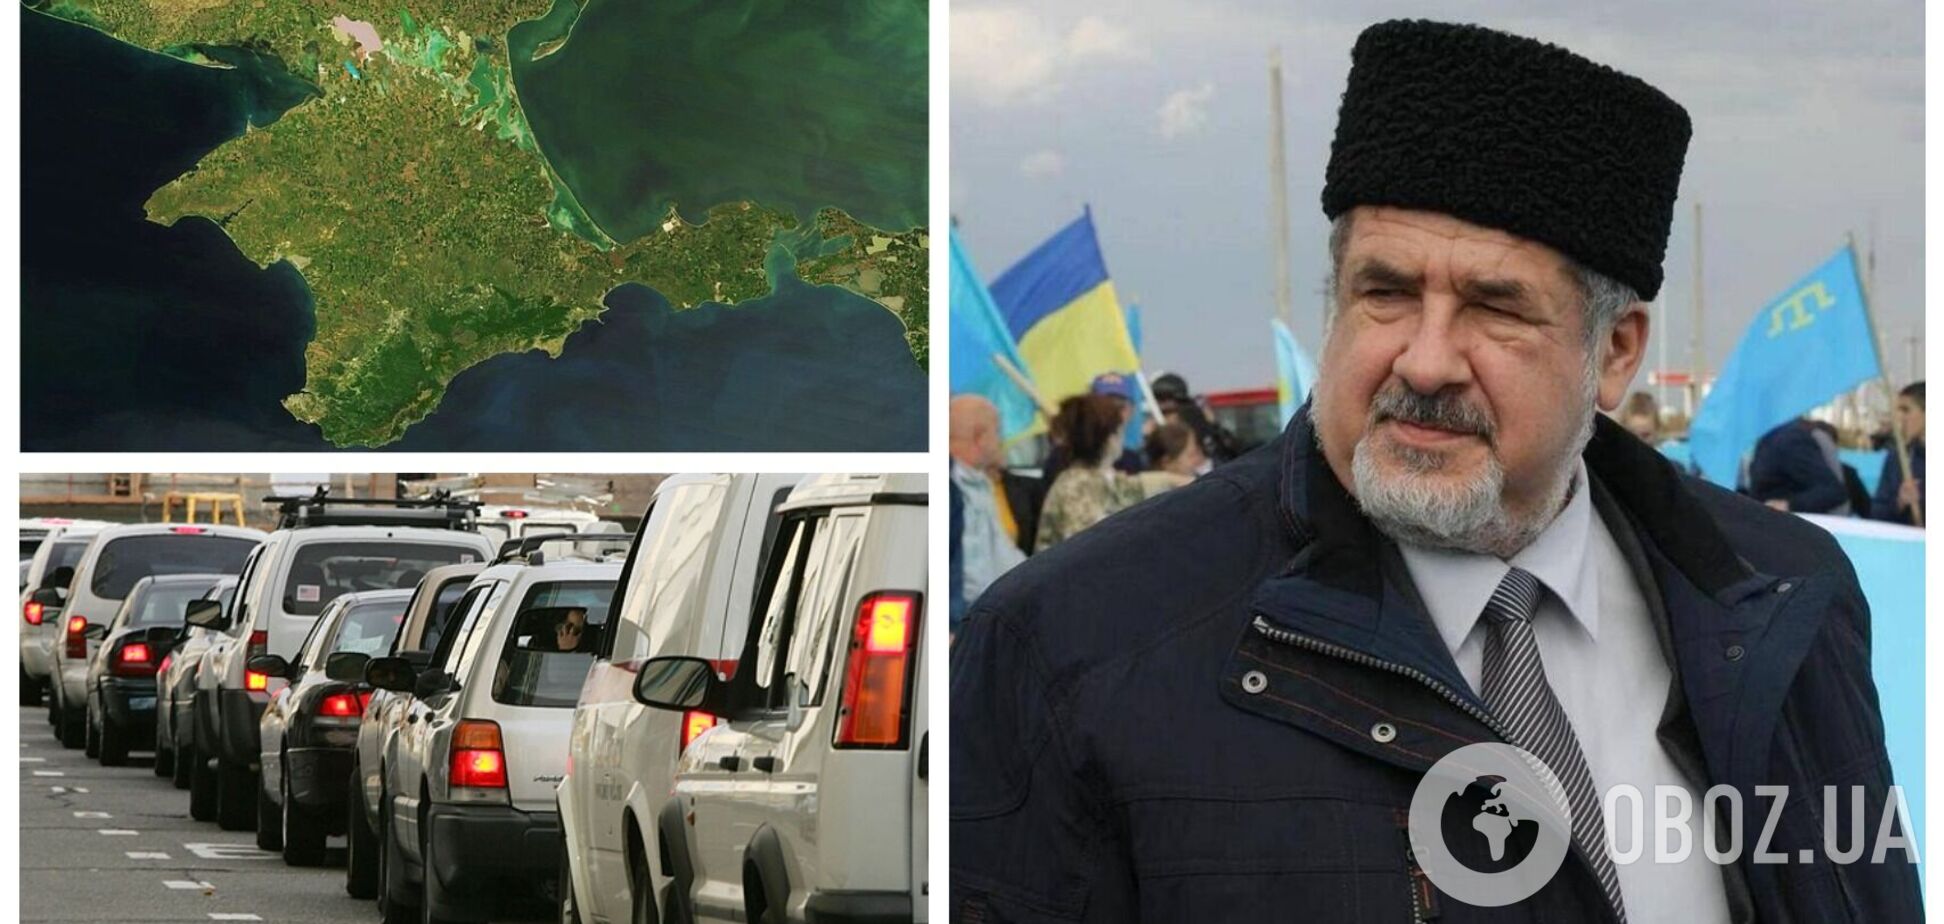 Жители оккупированного Крыма выезжают с полуострова целыми семьями во избежание мобилизации, – Чубаров